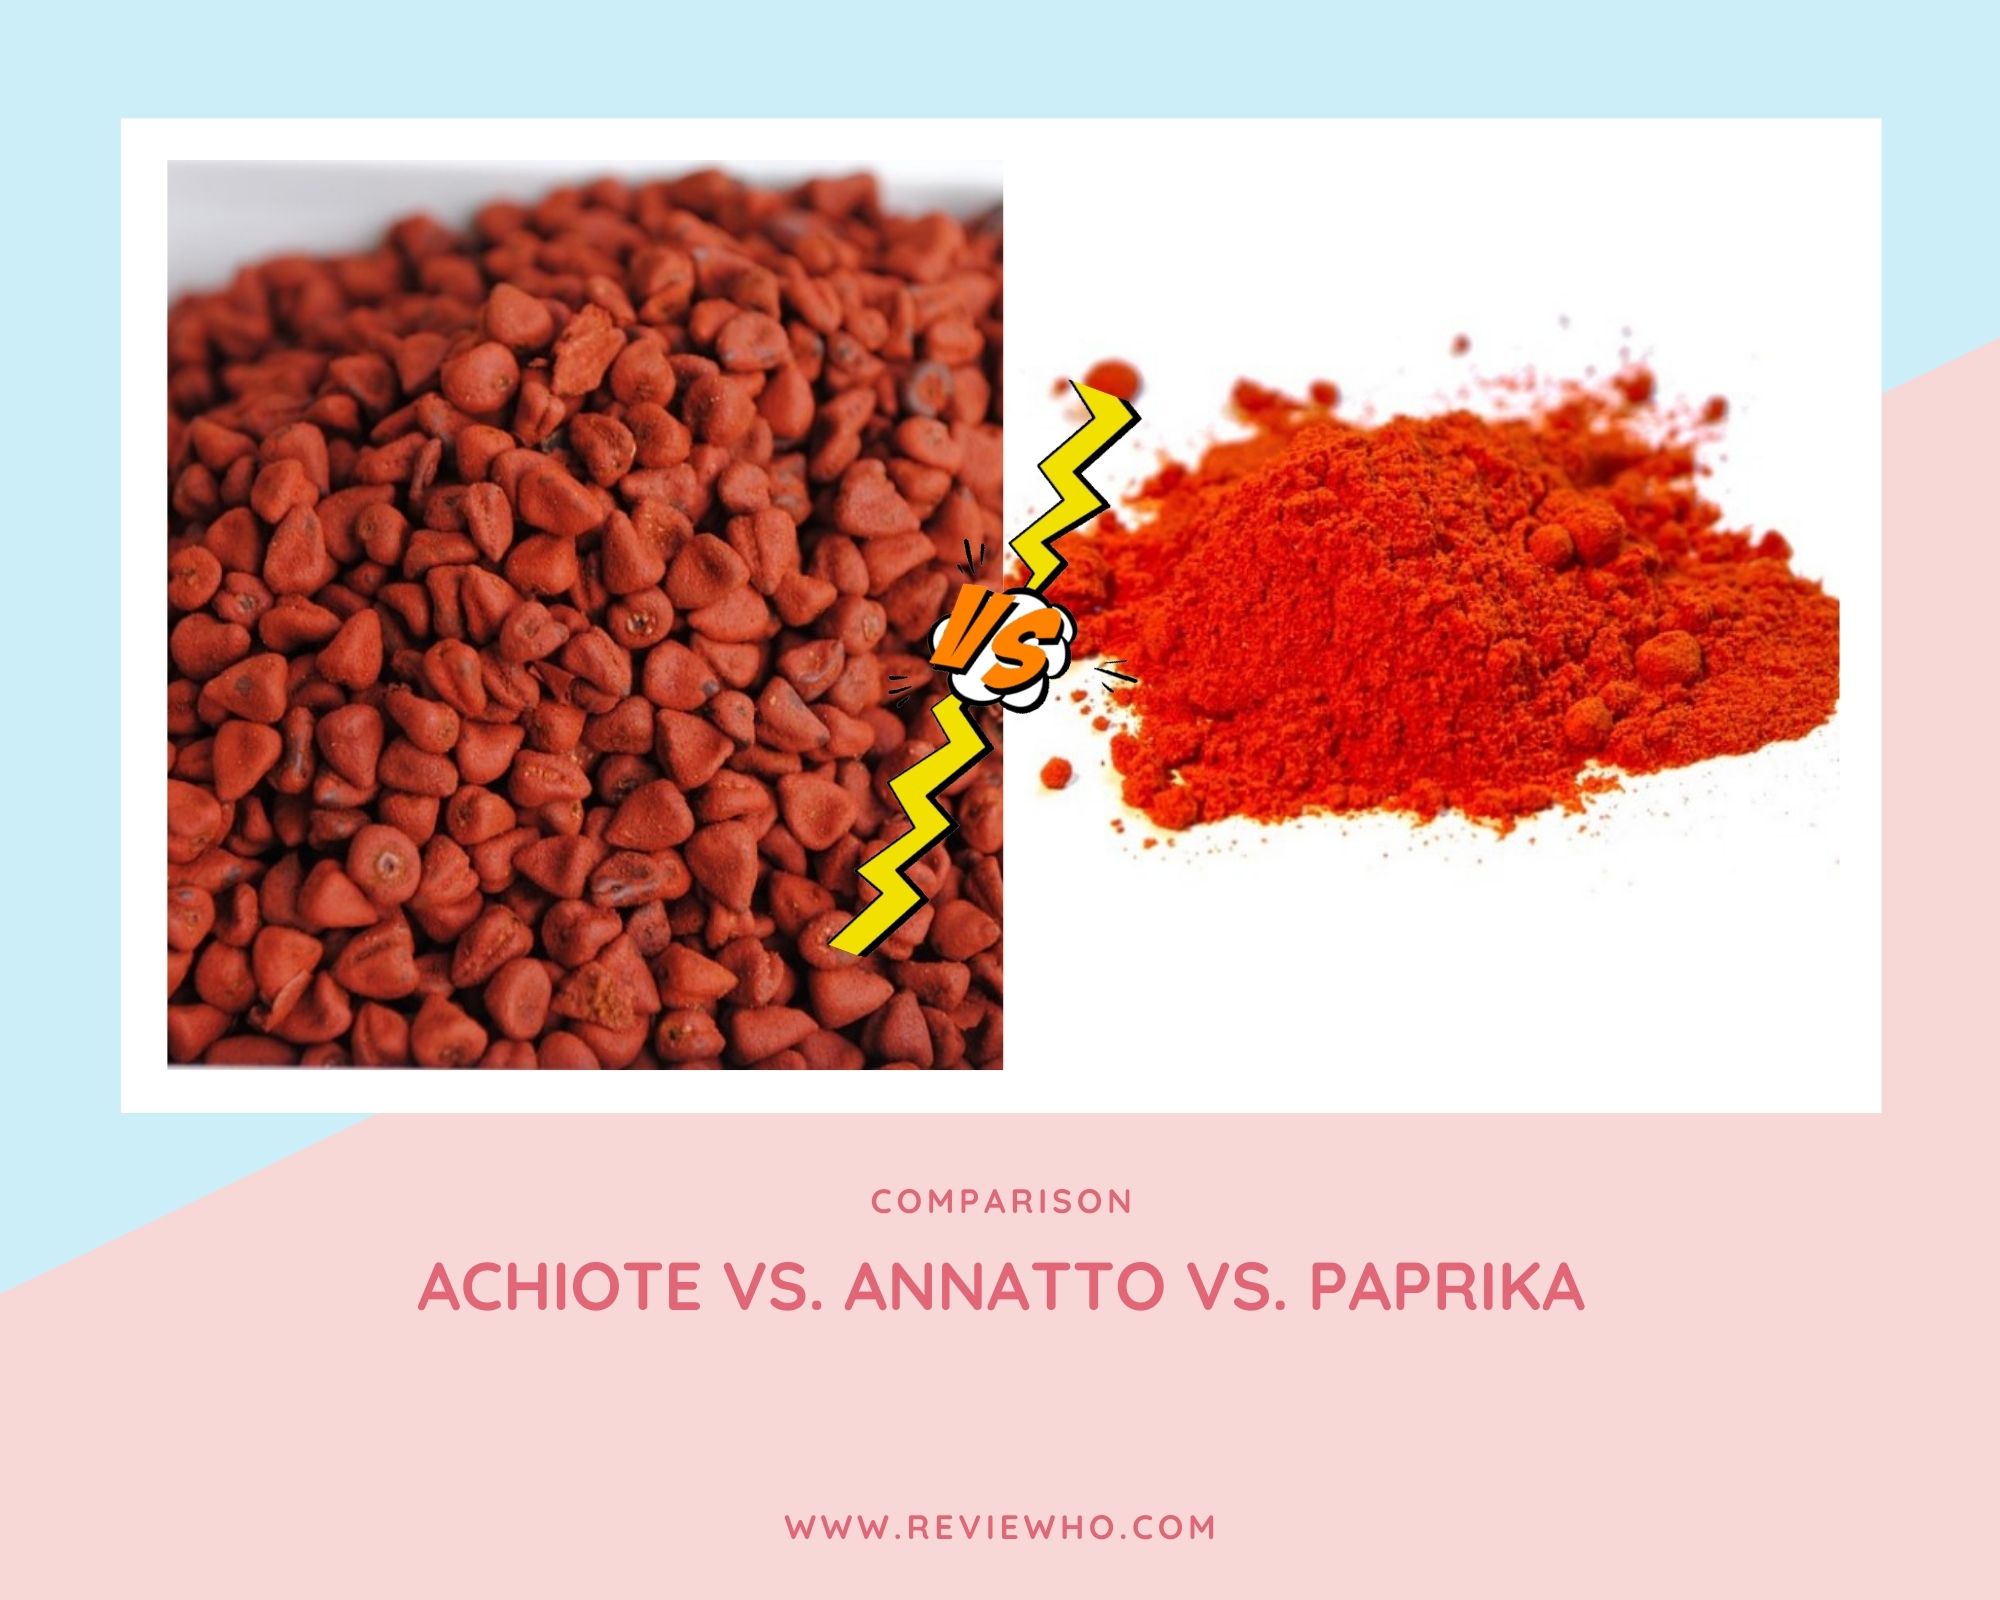 Achiote vs. Annatto vs. Paprika